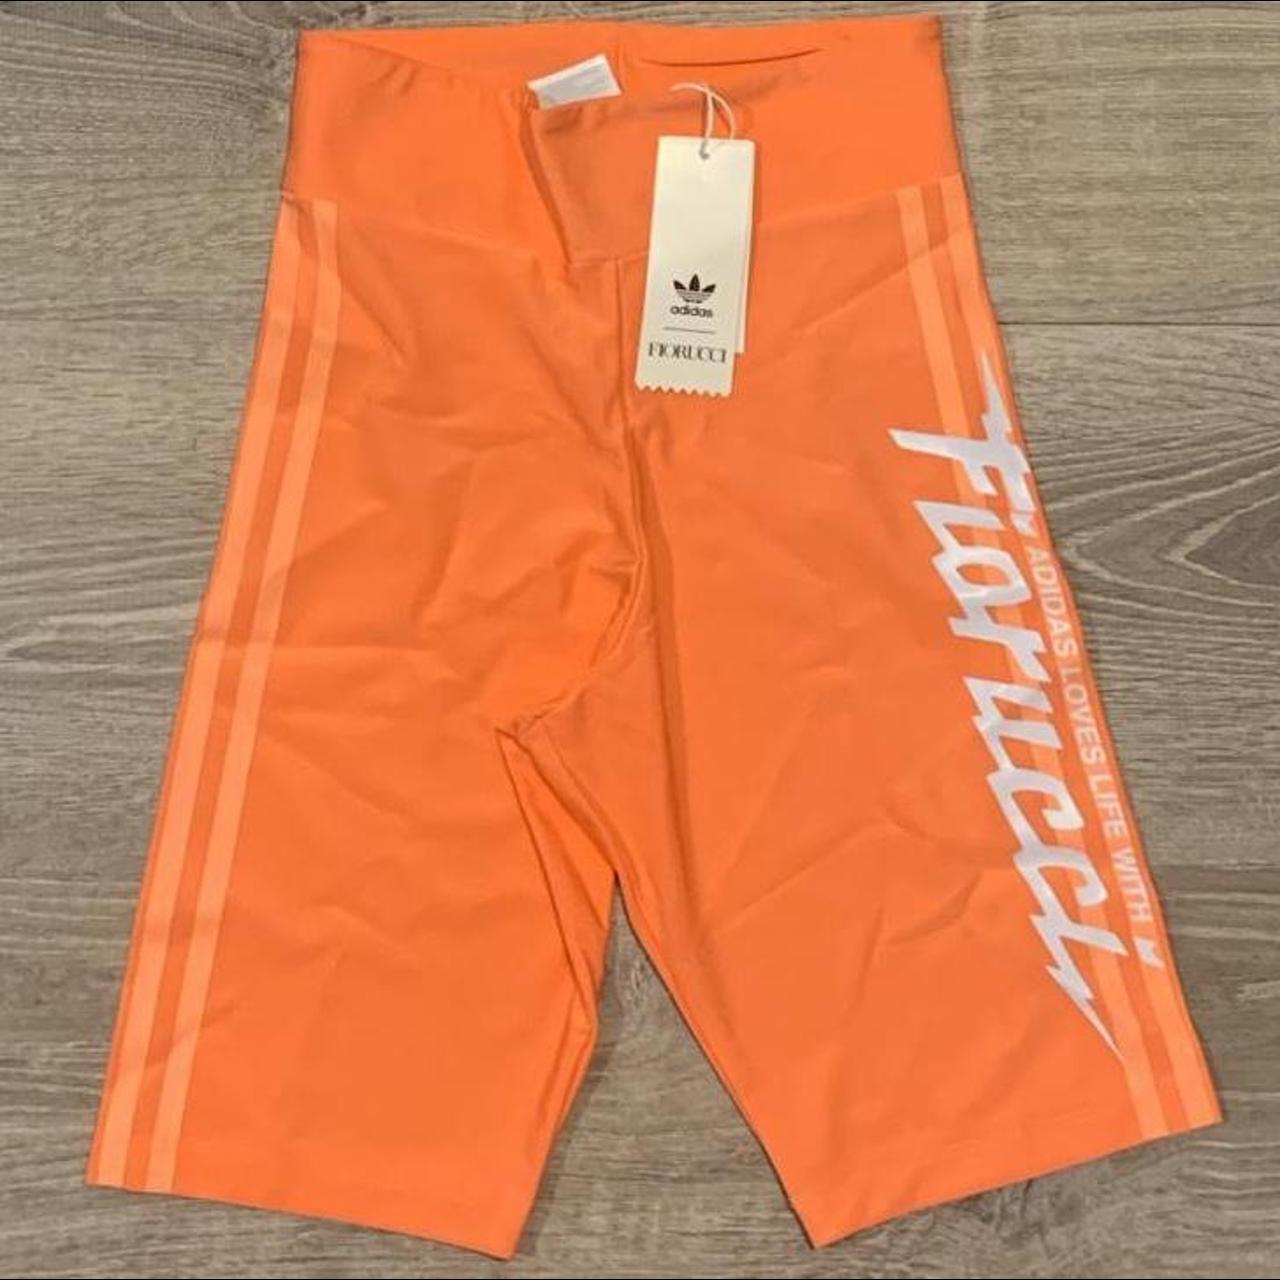 Fiorucci Women's Orange Shorts